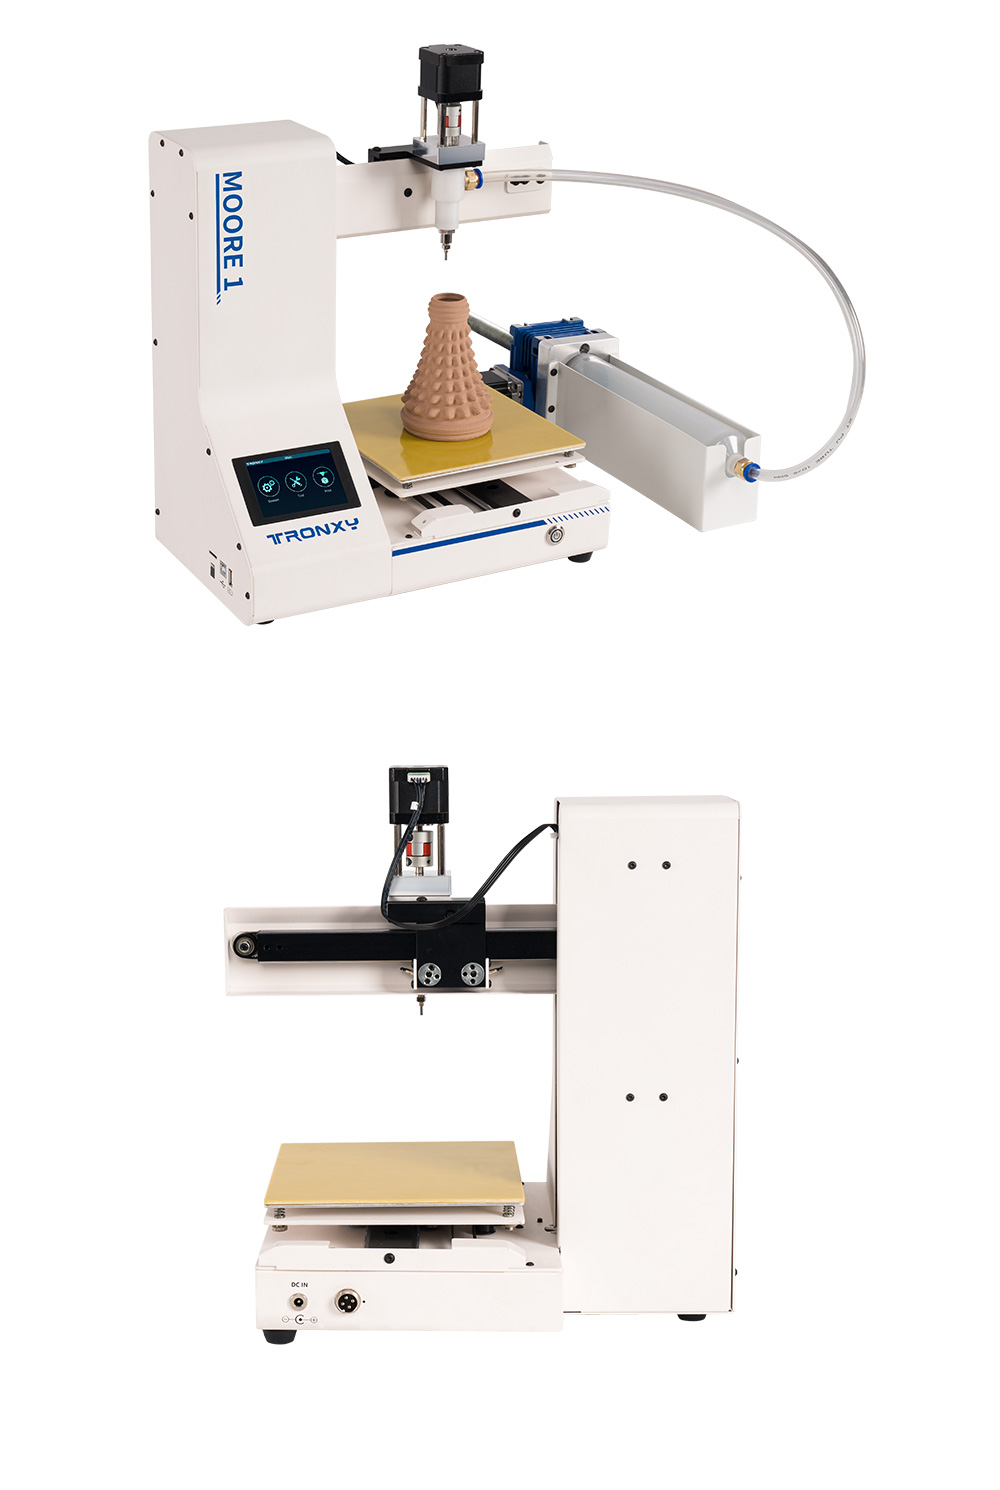 Tronxy Moore 1ミニクレイ3Dプリンター、40mm / s印刷速度、レジューム印刷、TMC2209、180 * 180 * 180mm